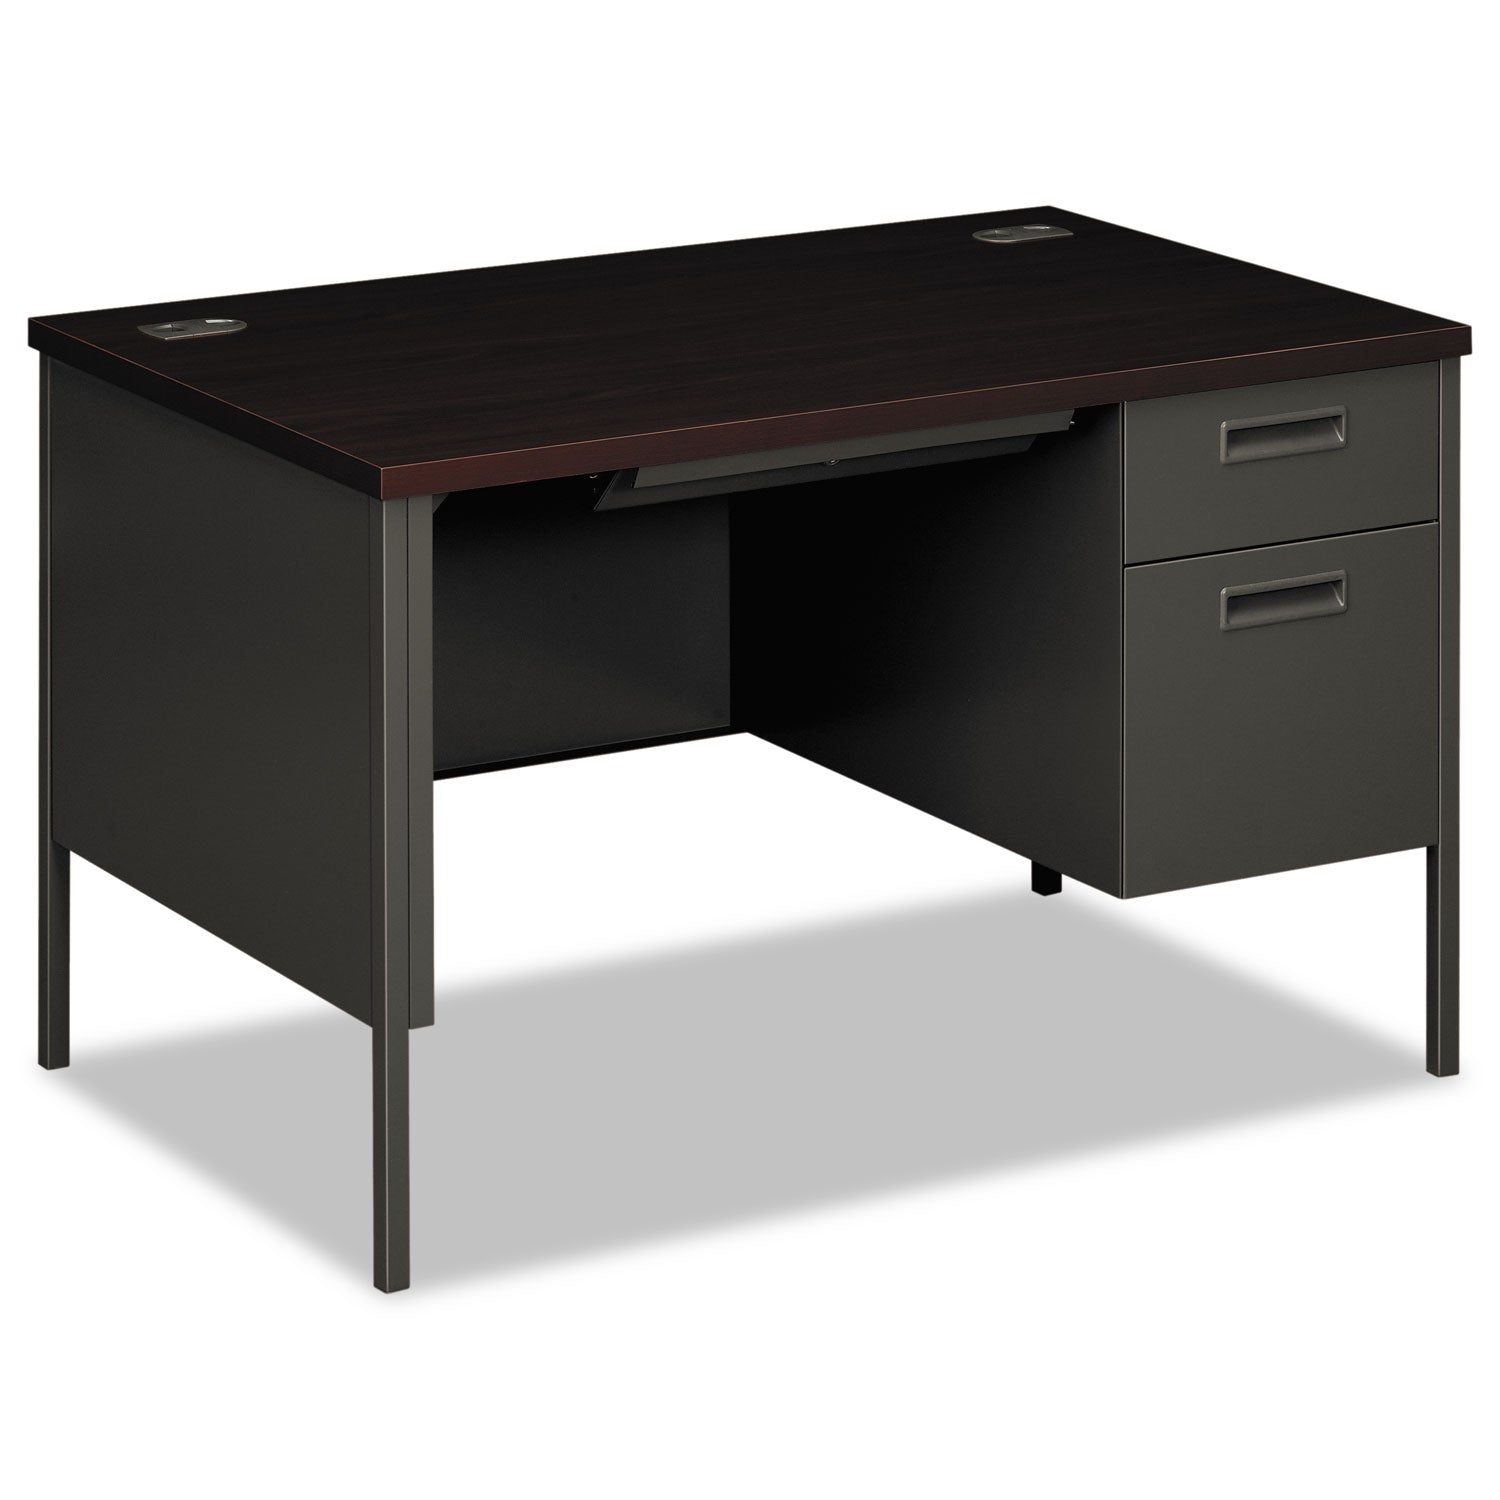 Metro Classic Series Right Pedestal Desk, 48" x 30" x 29.5", Mahogany/Charcoal - 